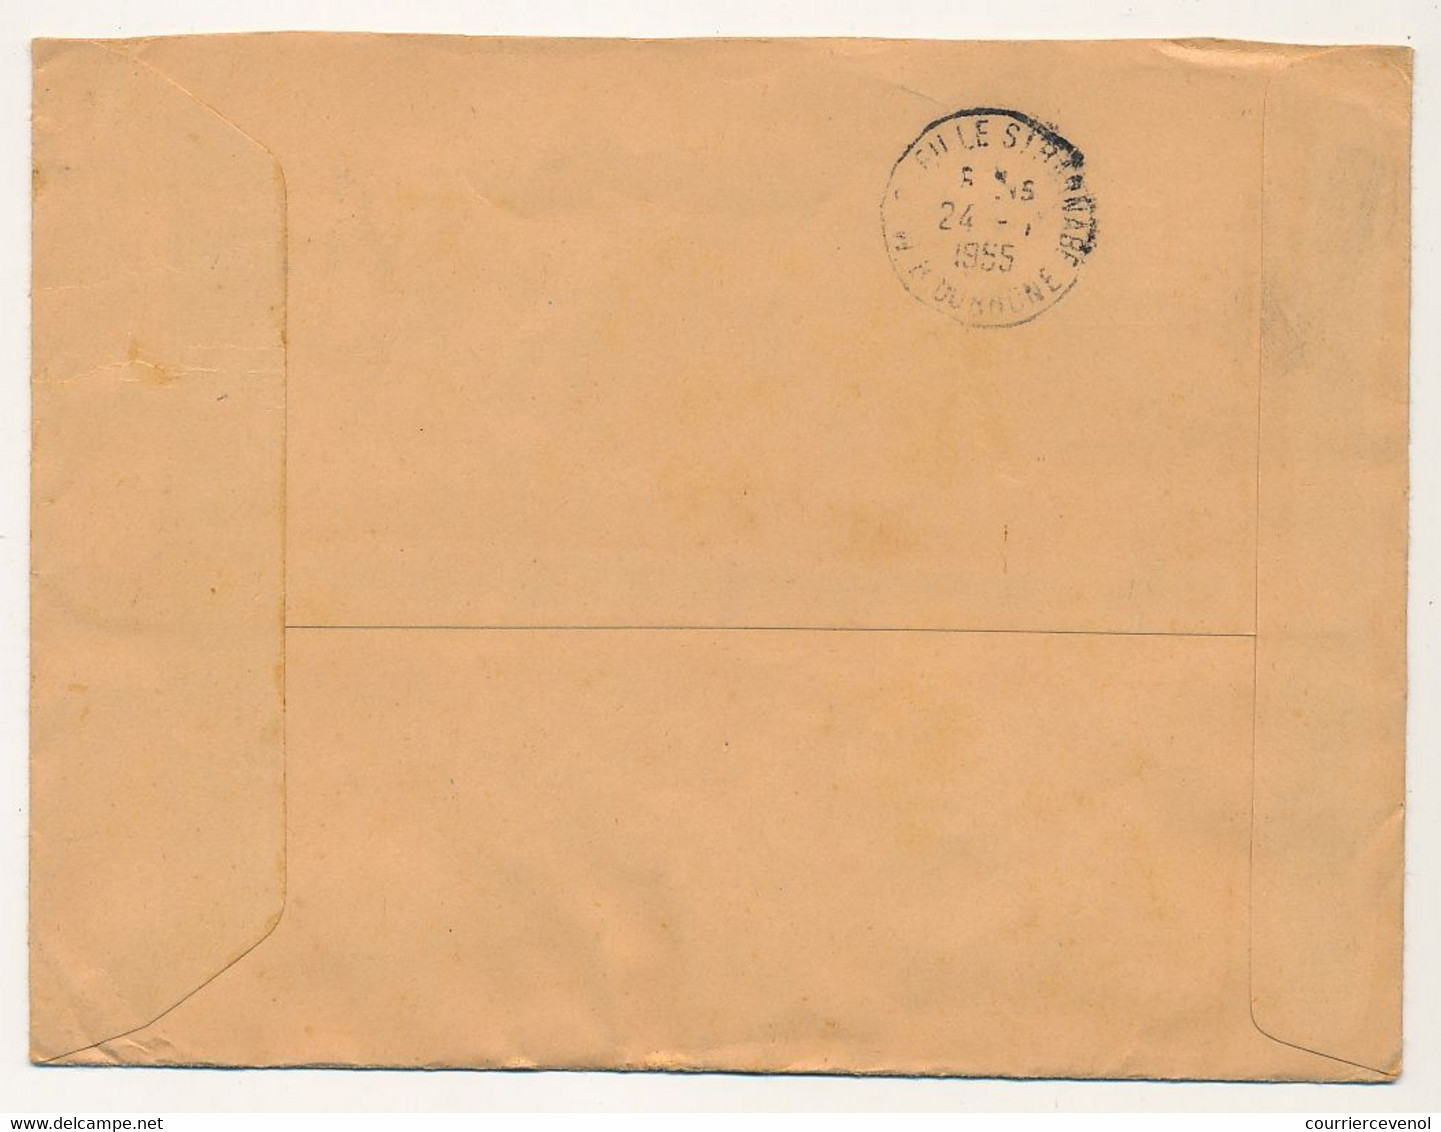 MONACO => Enveloppe Recommandée, Affranchissement Composé Obl Monte-Carlo 1955 - Covers & Documents